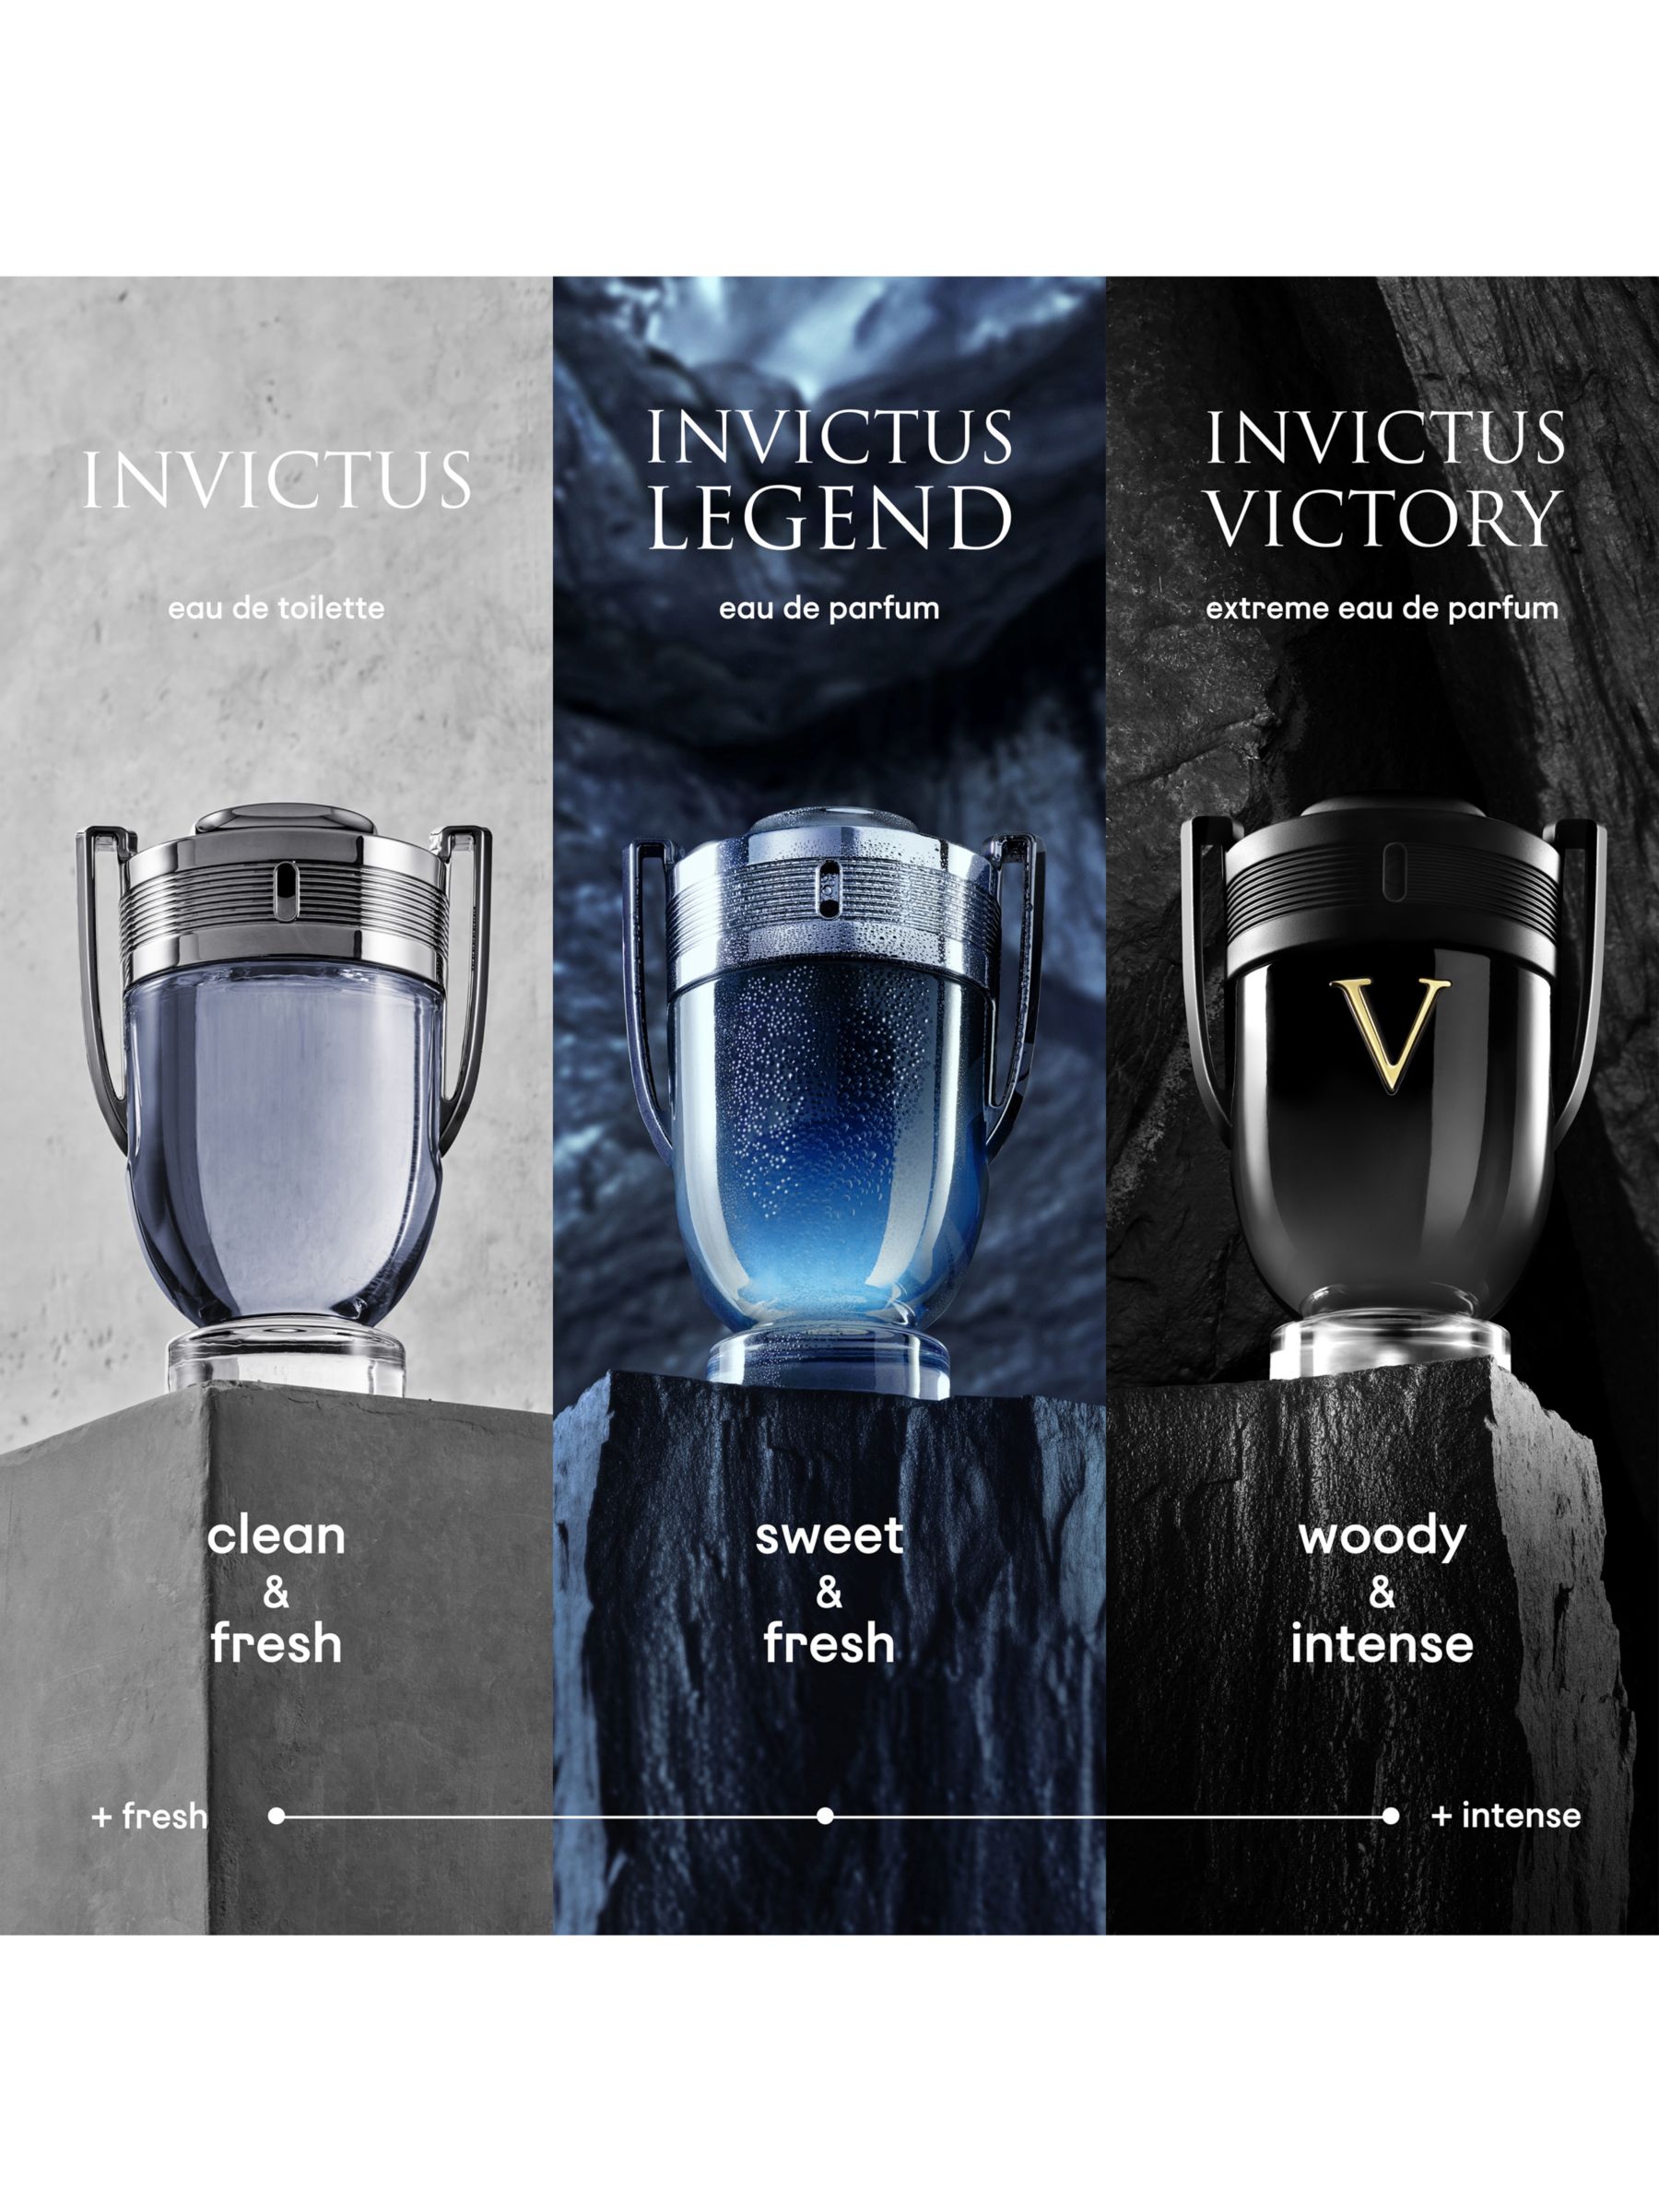 Rabanne Invictus Victory Extreme Eau de Parfum, 50ml